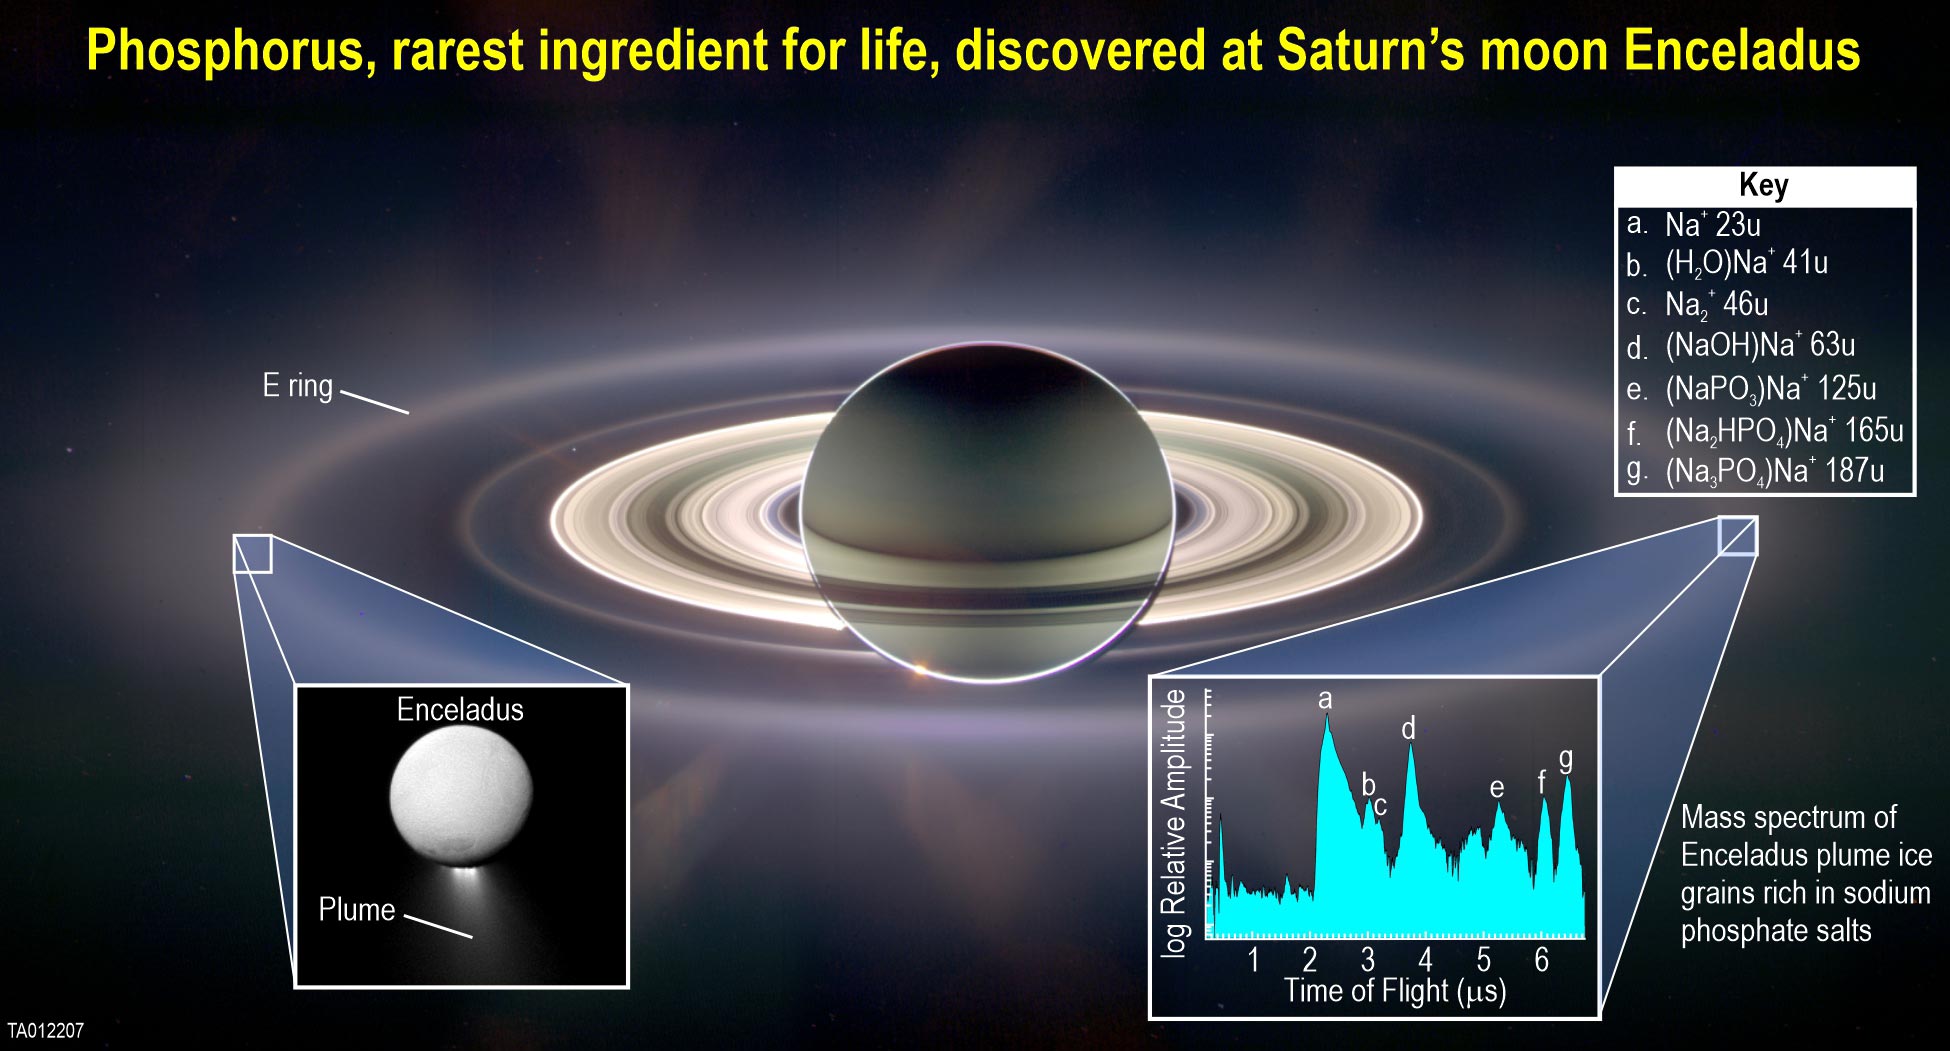 Um ingrediente essencial para a vida foi descoberto na lua gelada de Saturno, Encélado